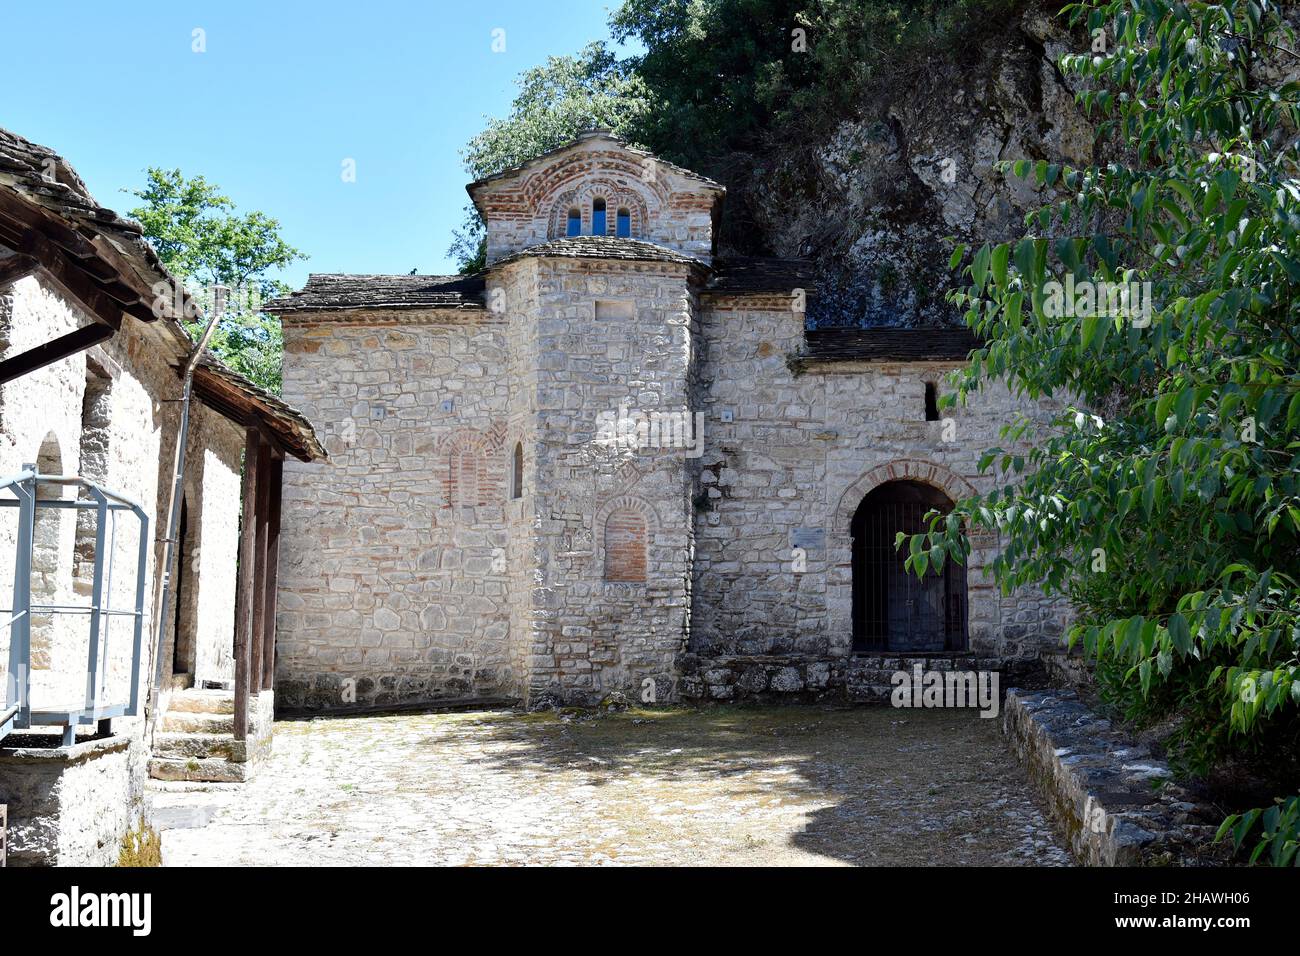 Griechenland, Ioannina, Teil des mittelalterlichen Klosters Prodomou auf der winzigen Insel im See Pamvotida, wo der osmanische Gouverneur Ali Pascha ermordet wurde Stockfoto